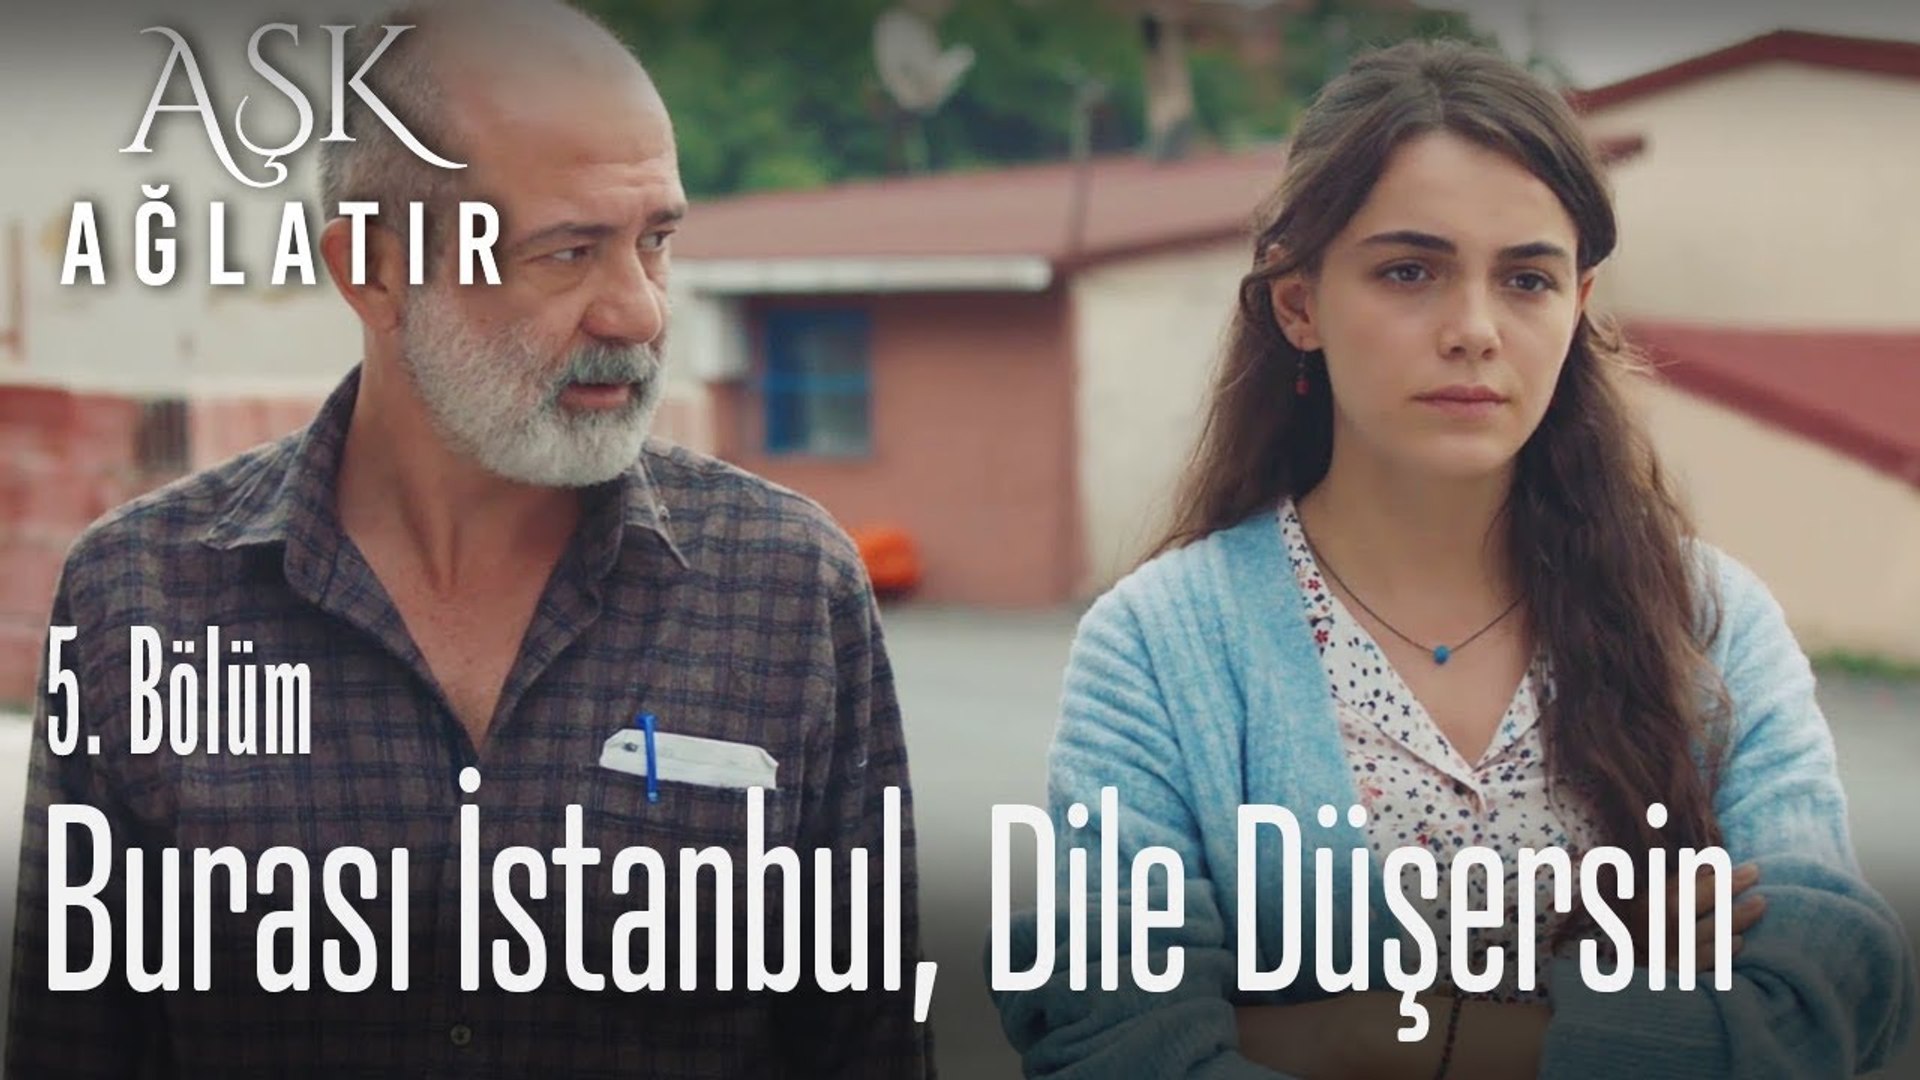 Burası Istanbul Dile Düşersin Aşk Ağlatır 5 Bölüm